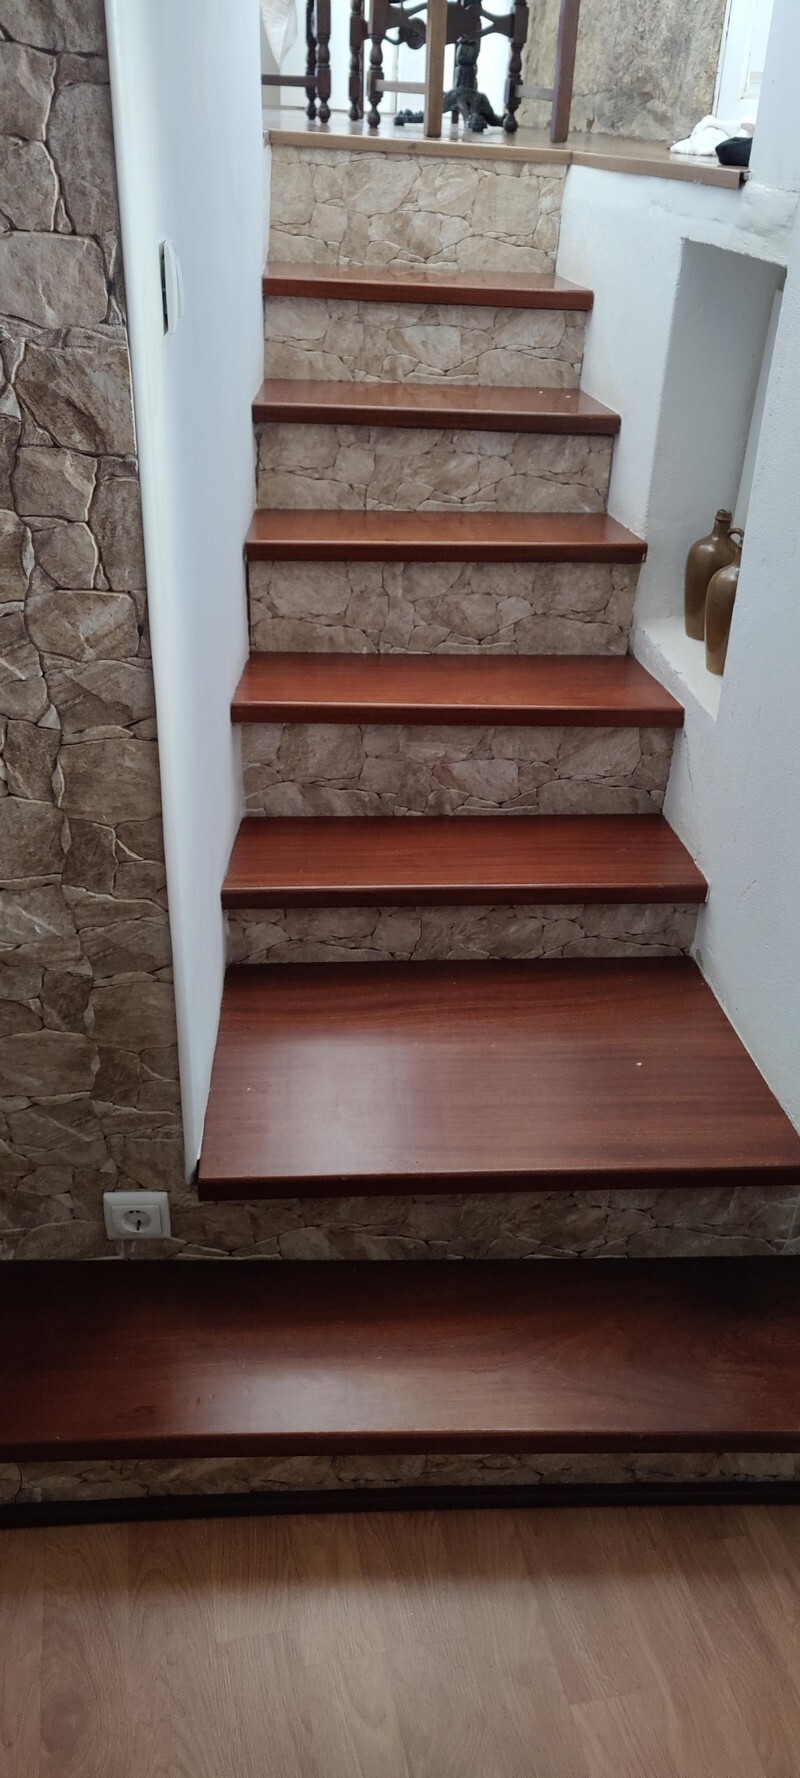 15. Дизайн, который сбивает с ног: "На лестнице в Airbnb, где я останавливался, все ступеньки были разной высоты, ширины и глубины"